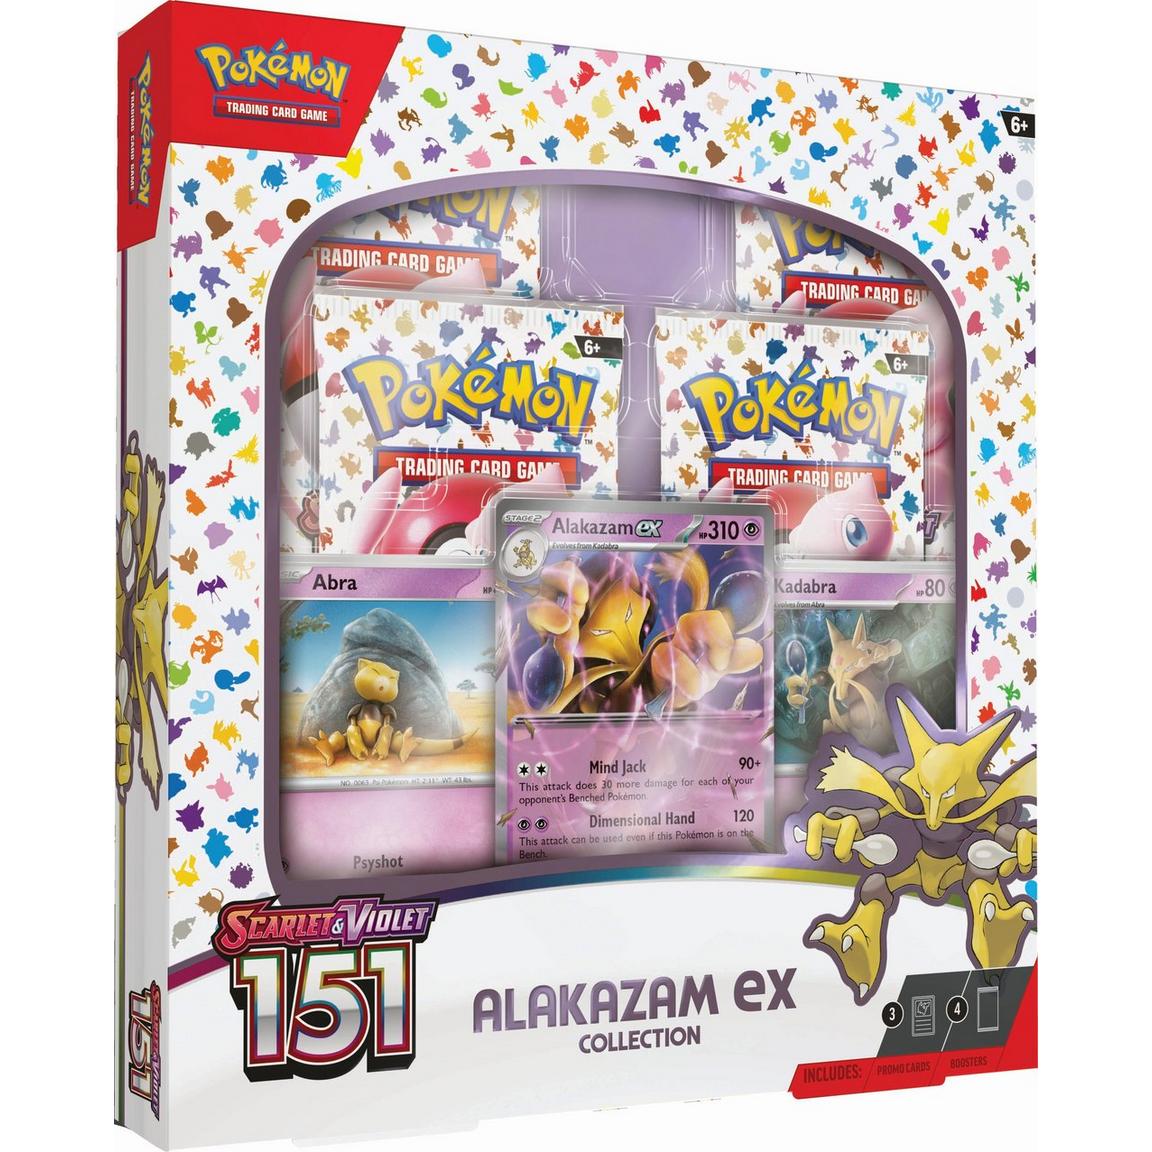 Pokemon 151 Alakazam EX Box